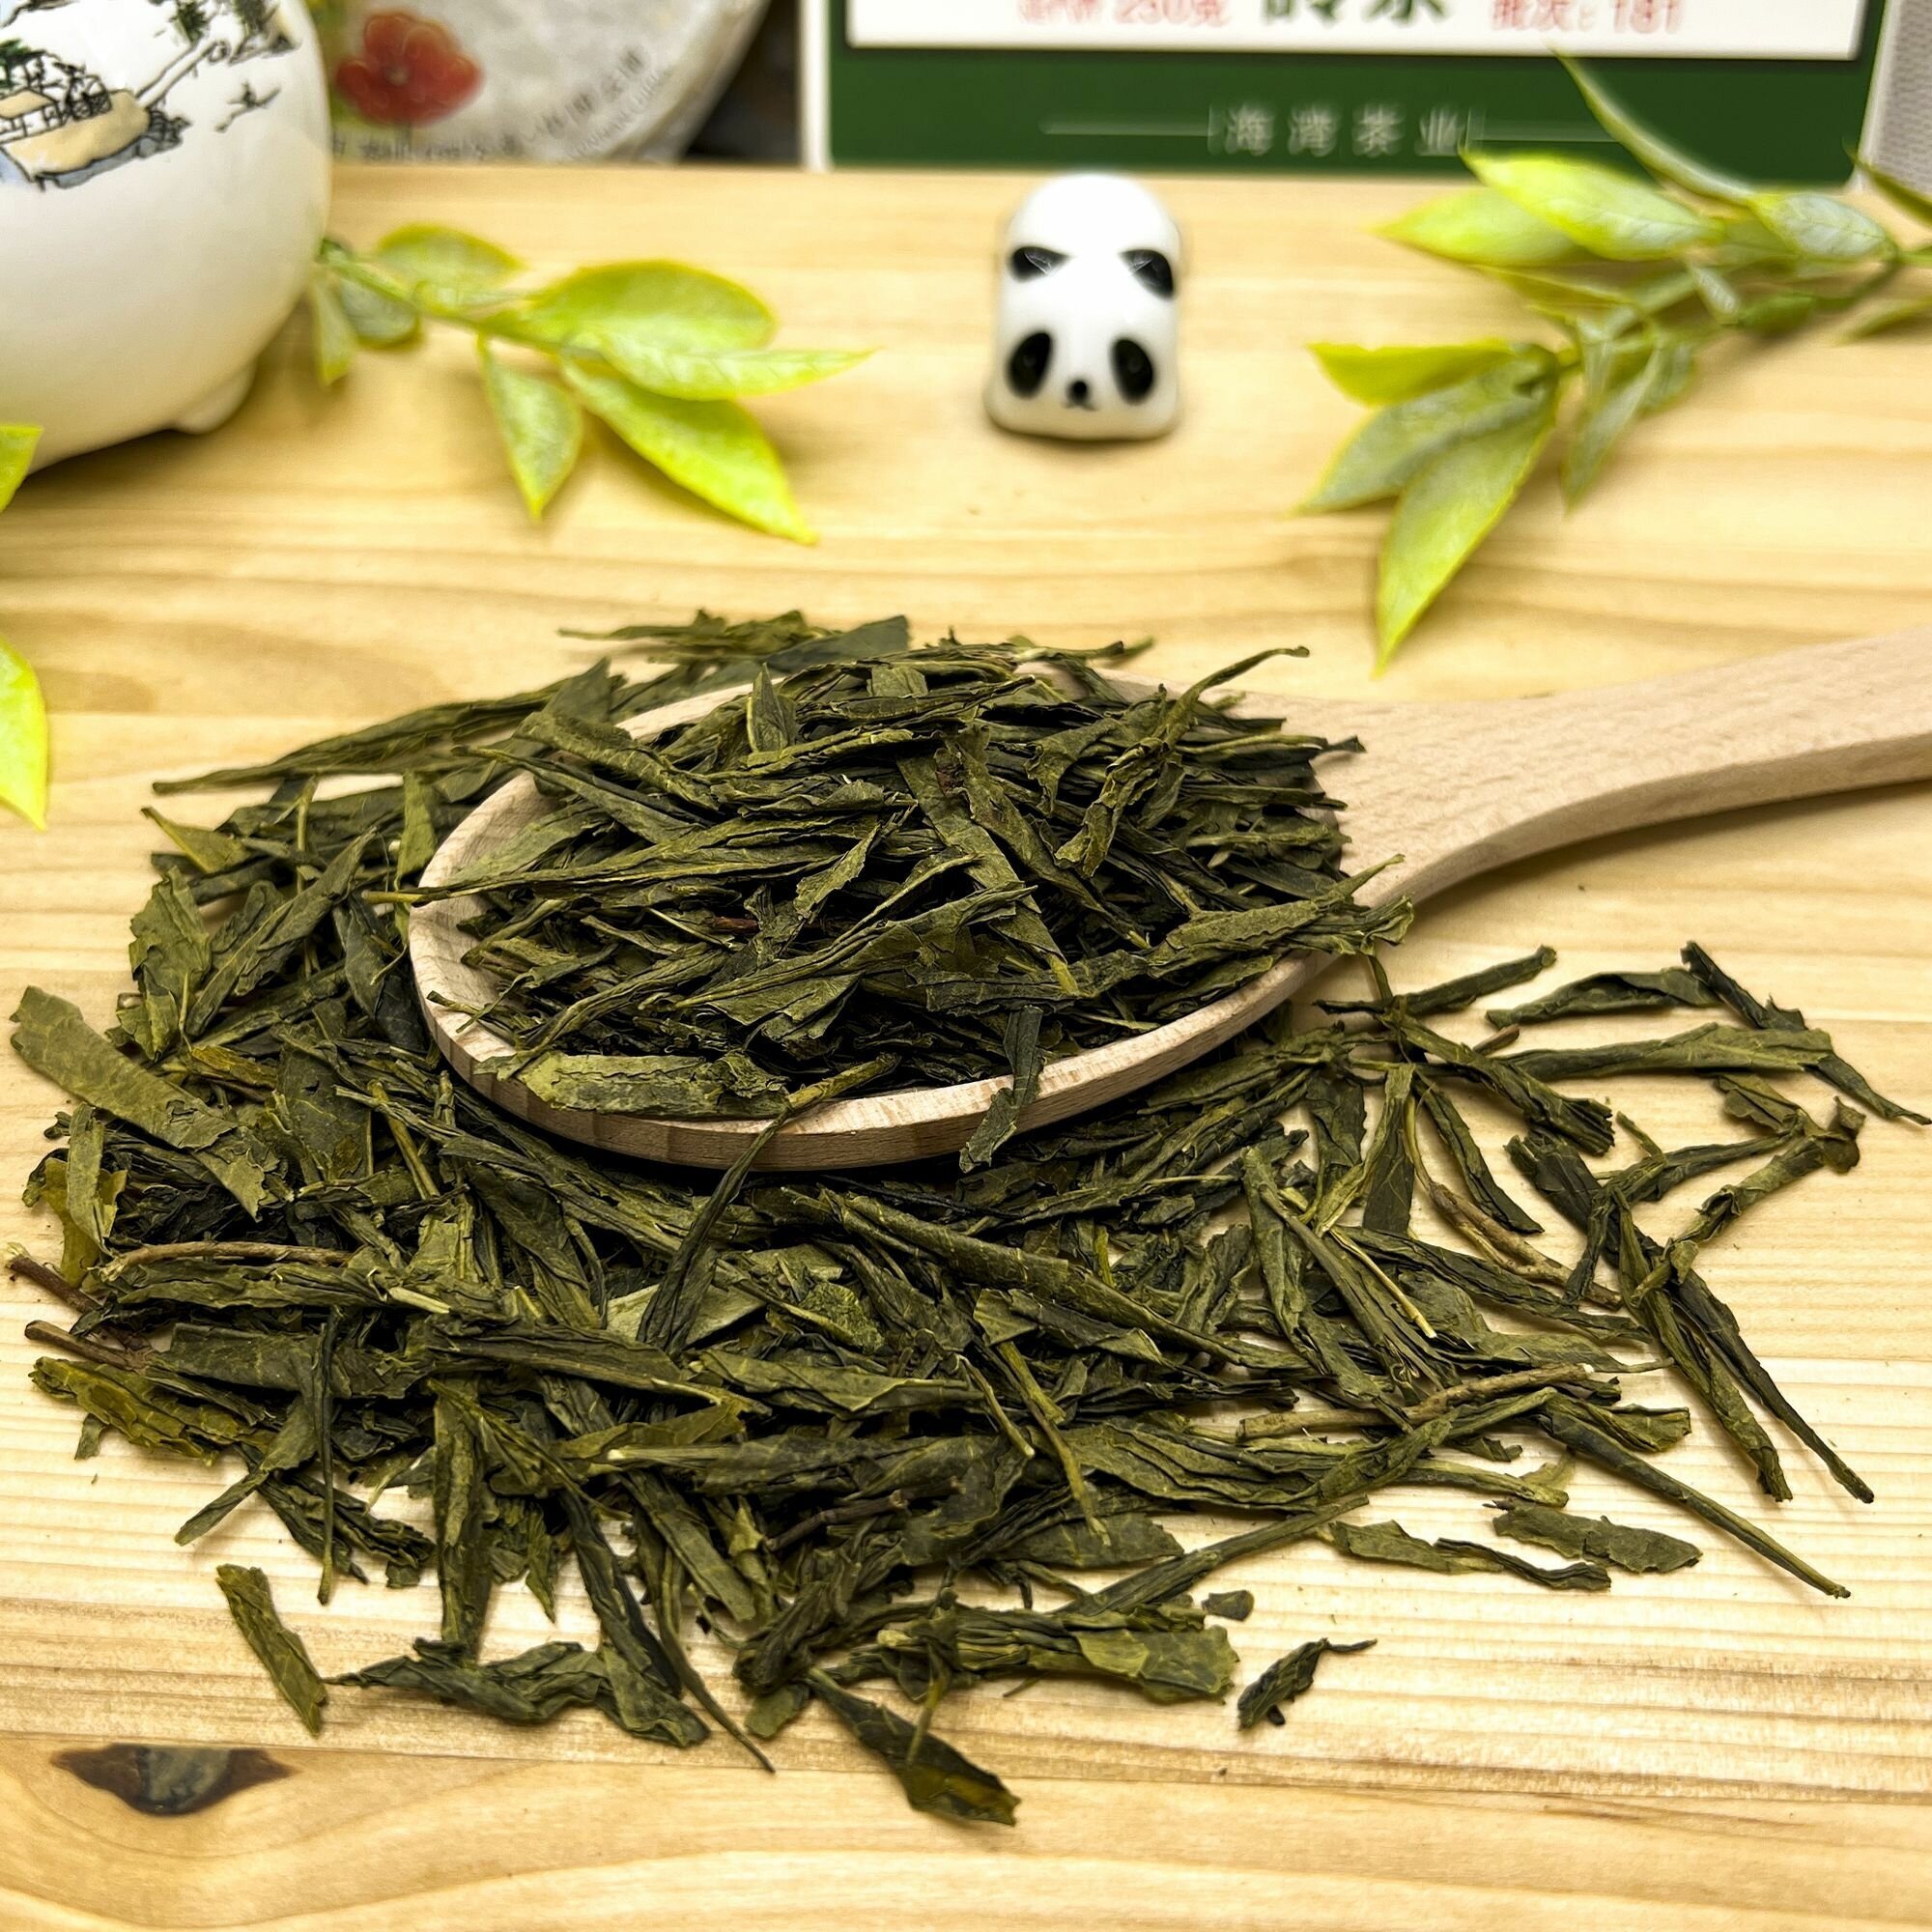 Китайский зеленый чай без добавок Сенча (кат. B) Полезный чай / HEALTHY TEA, 100 г